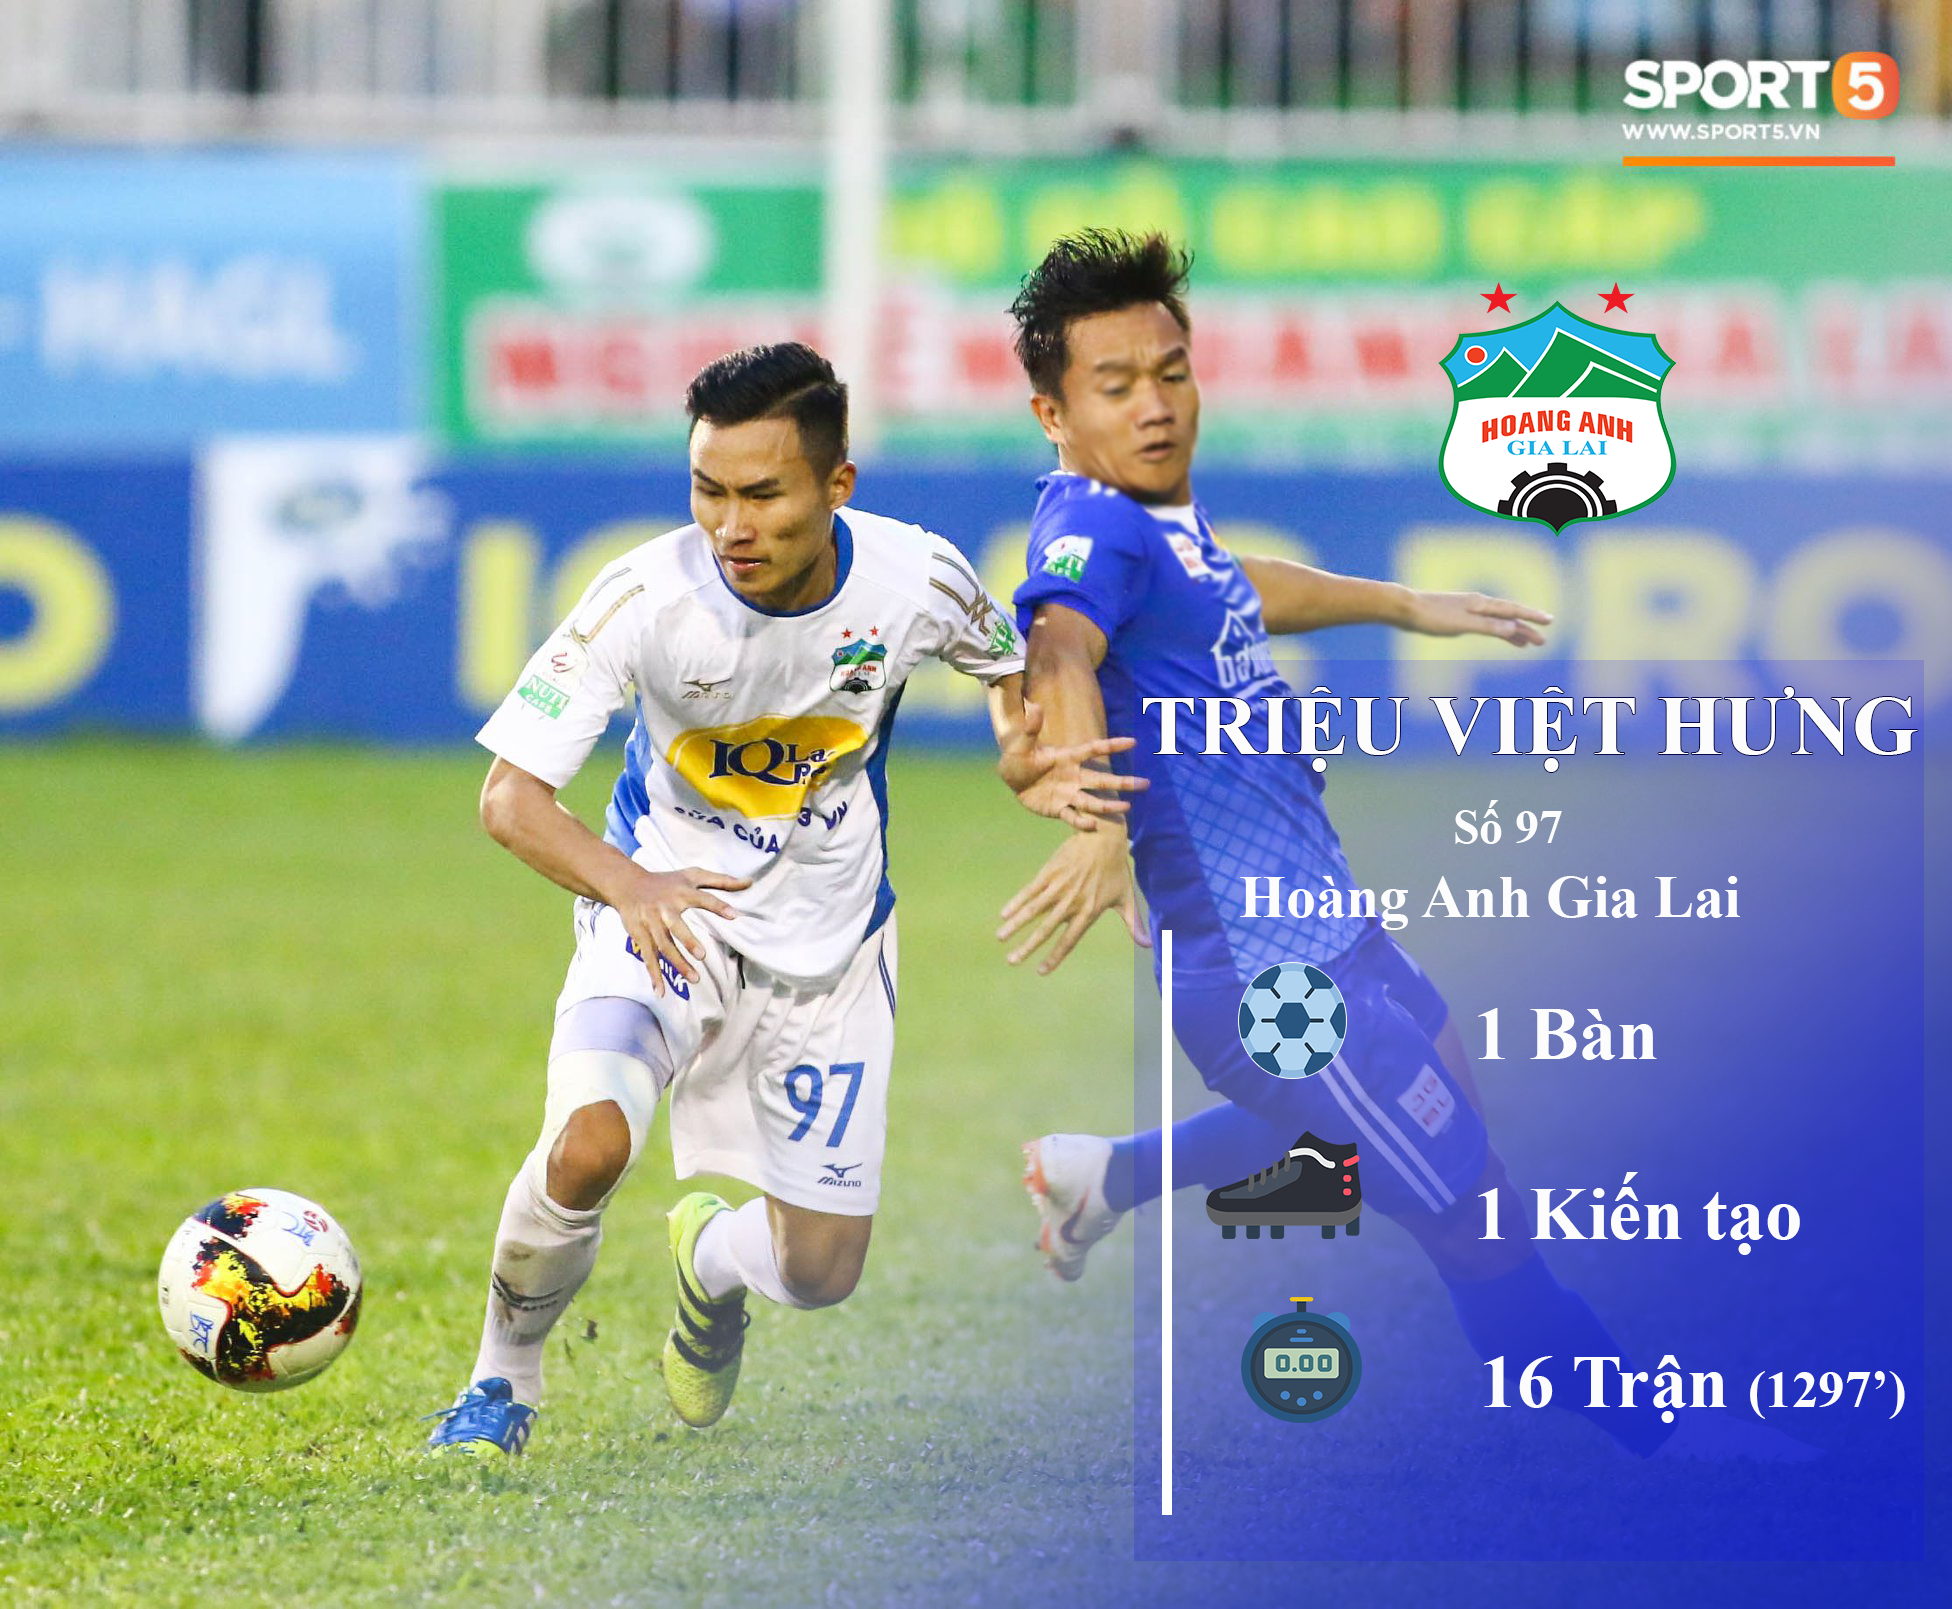 Những thống kê đáng chú ý của cầu thủ U23 Việt Nam (P1) - Ảnh 5.